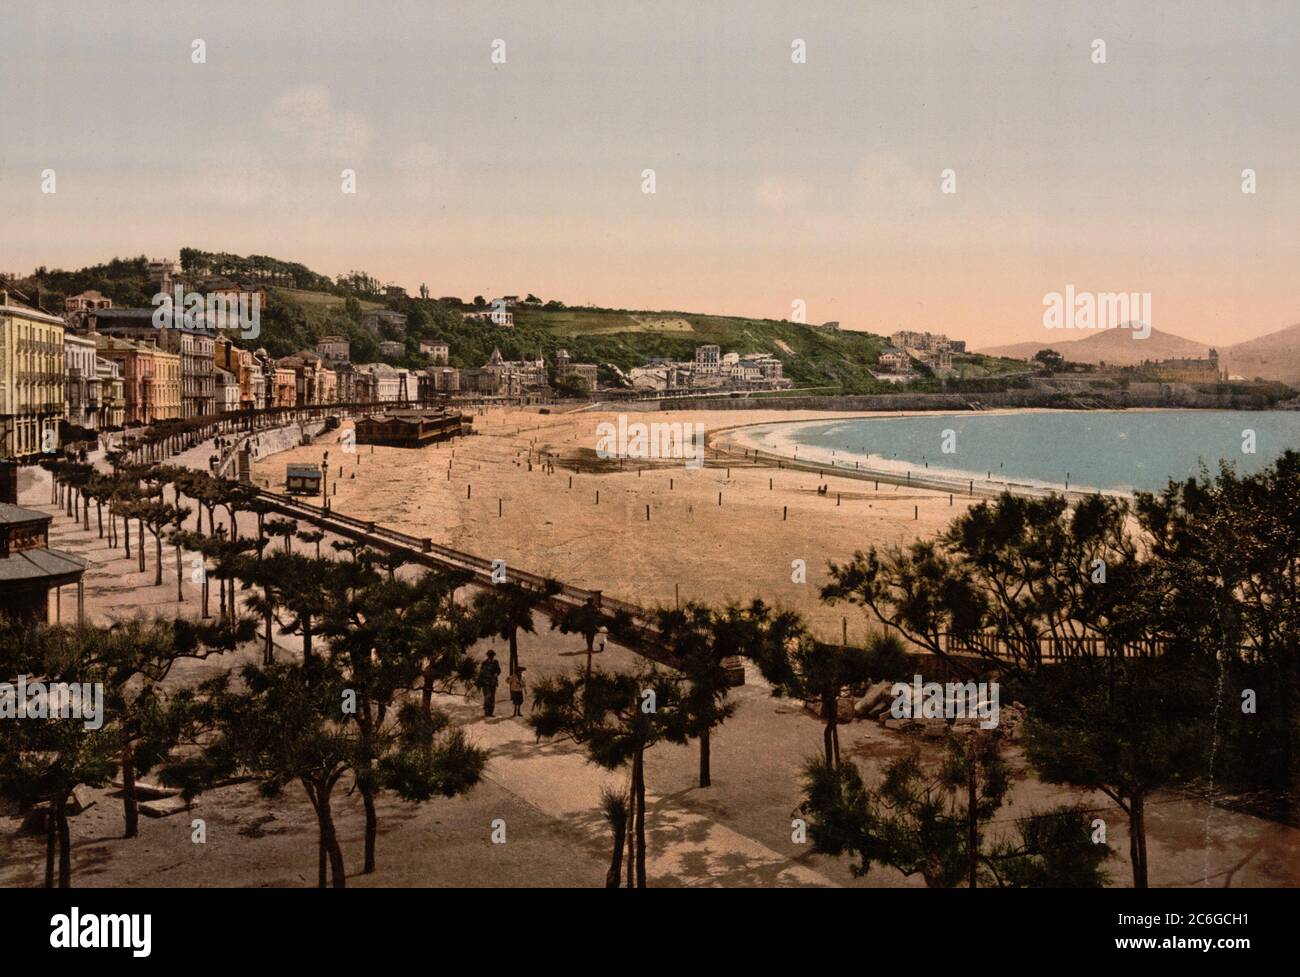 La plage, San Sebastian, Espagne, vers 1900 Banque D'Images